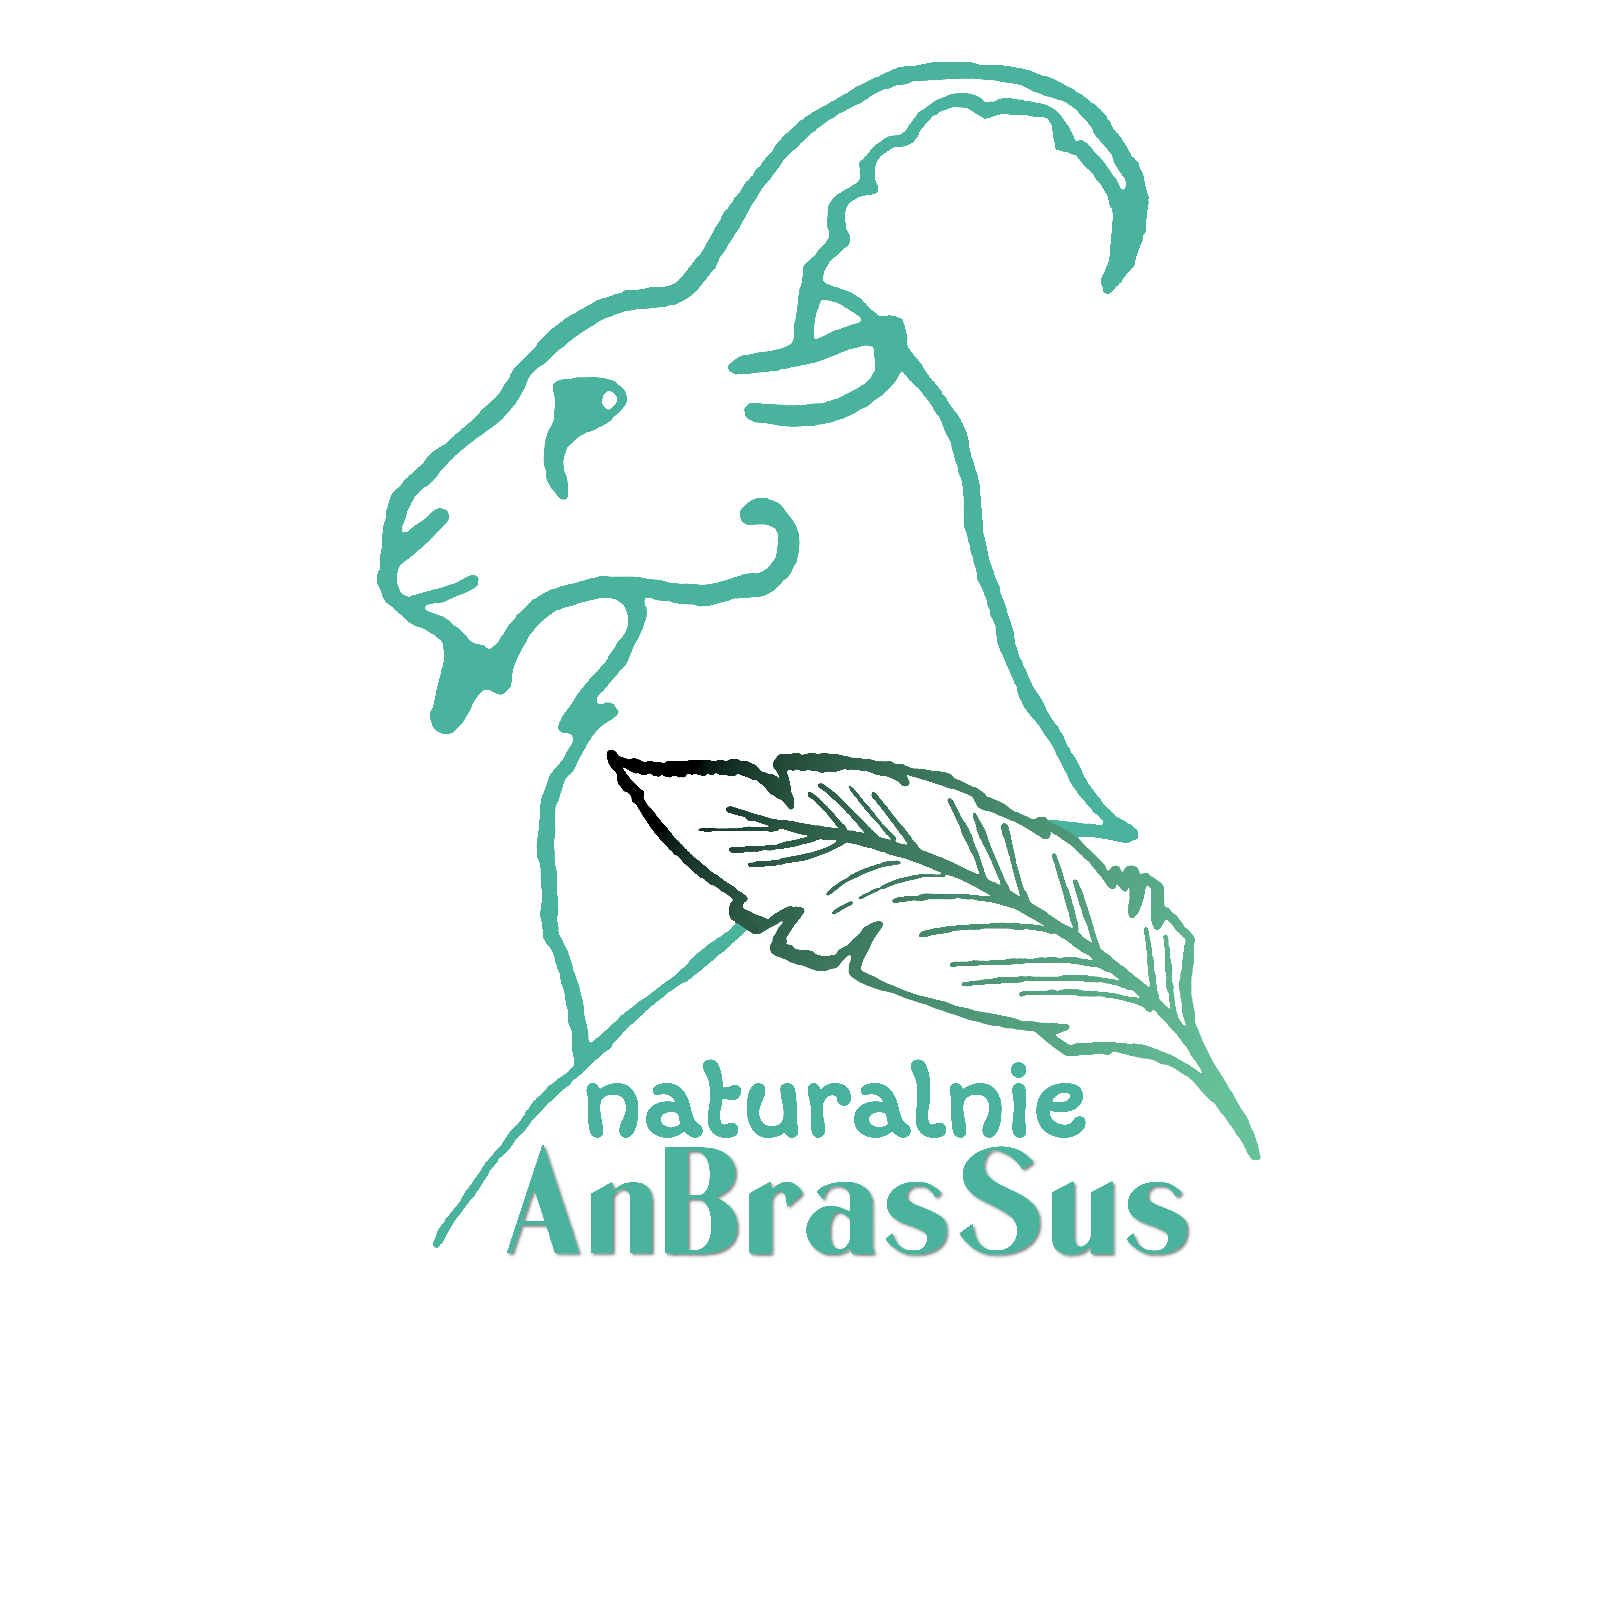 AnBrasSus